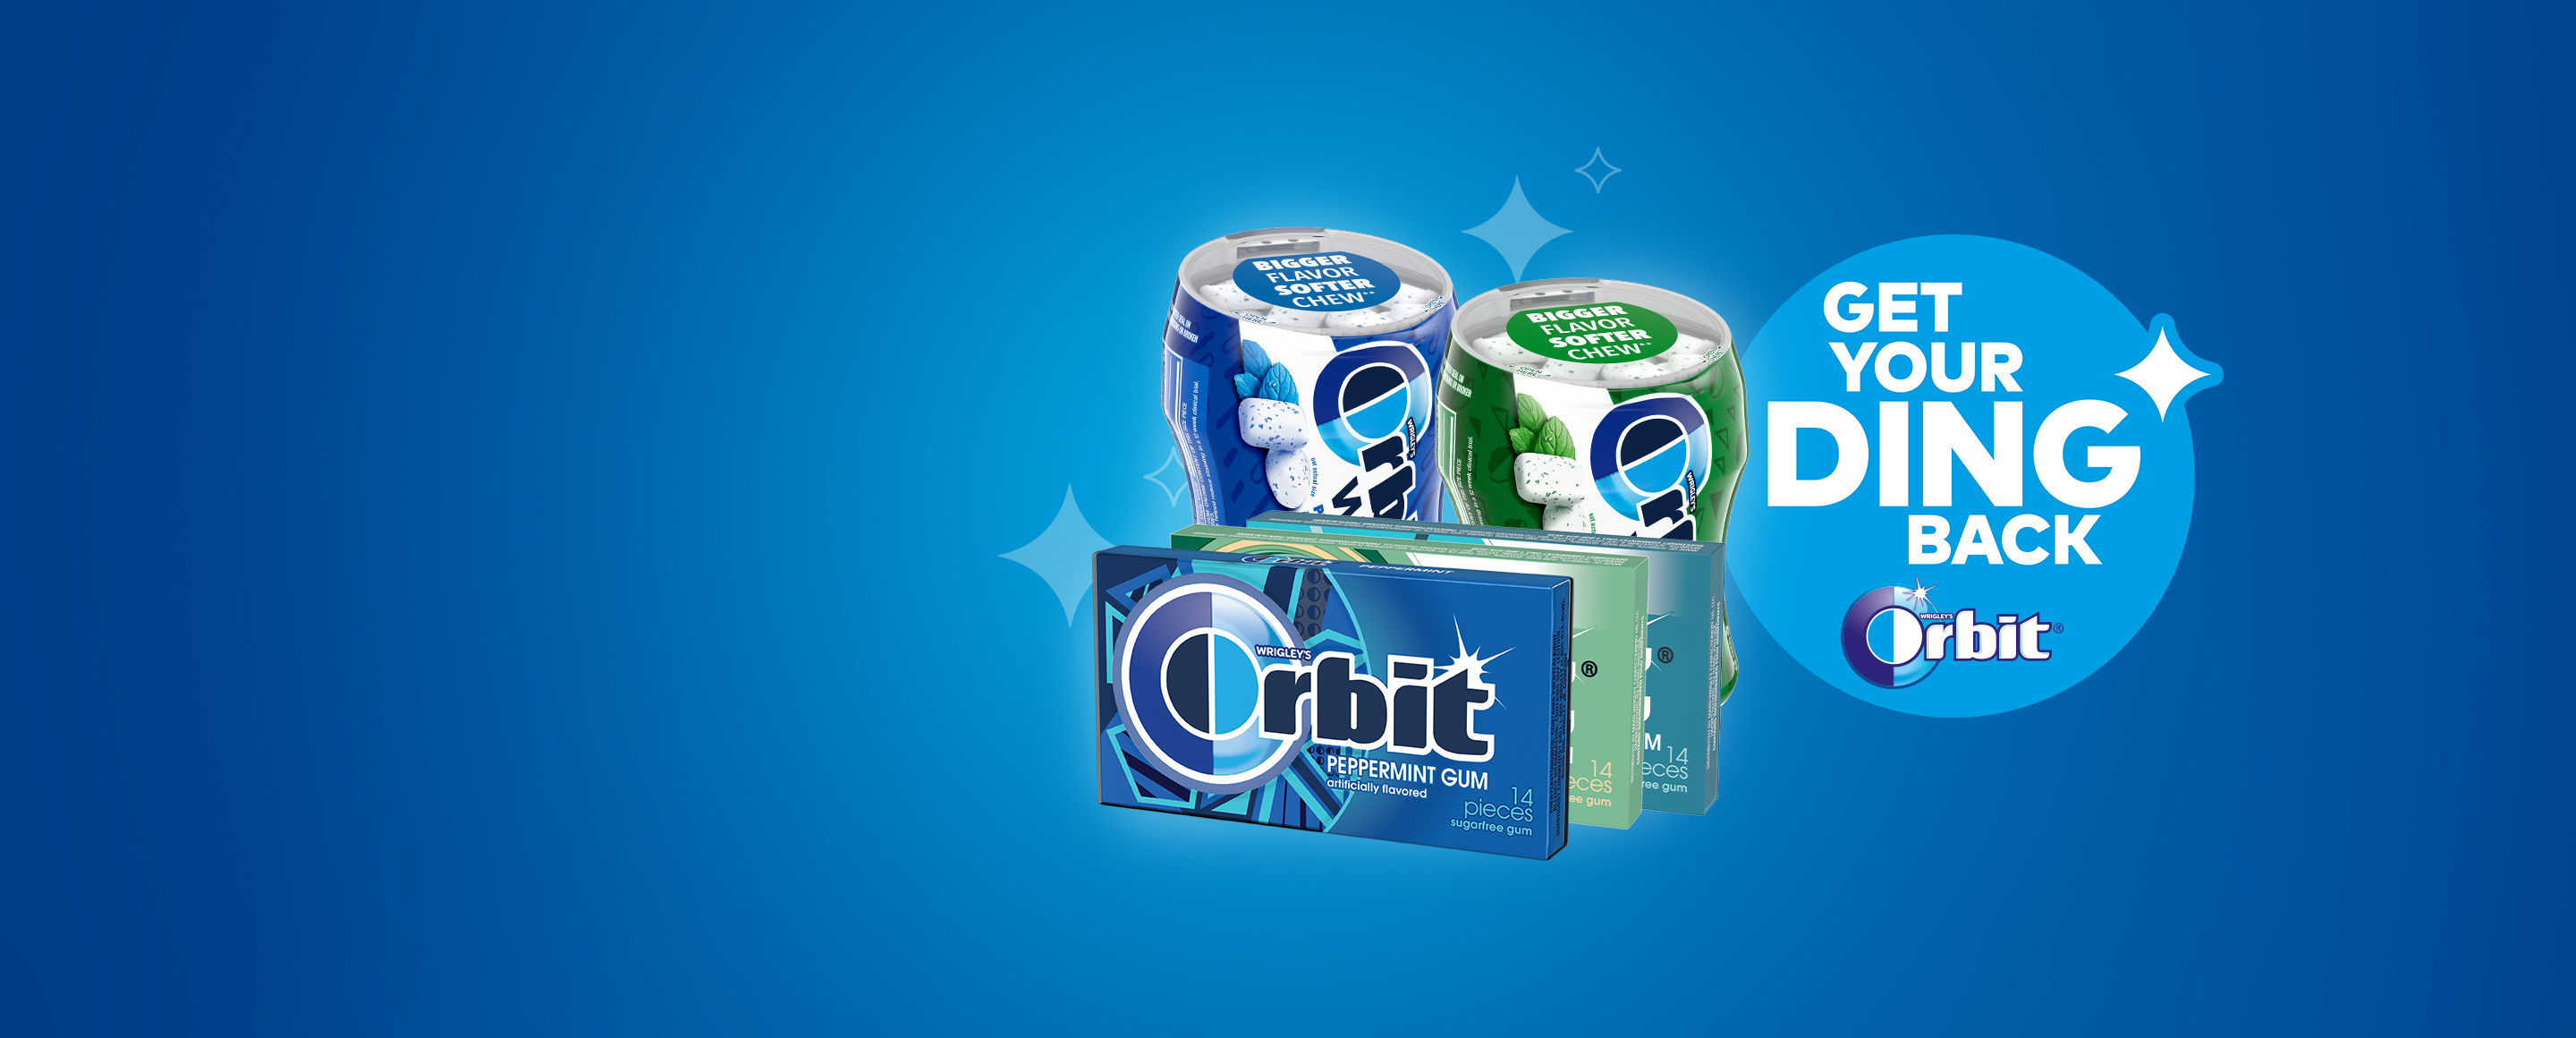 Orbit Gum collection.